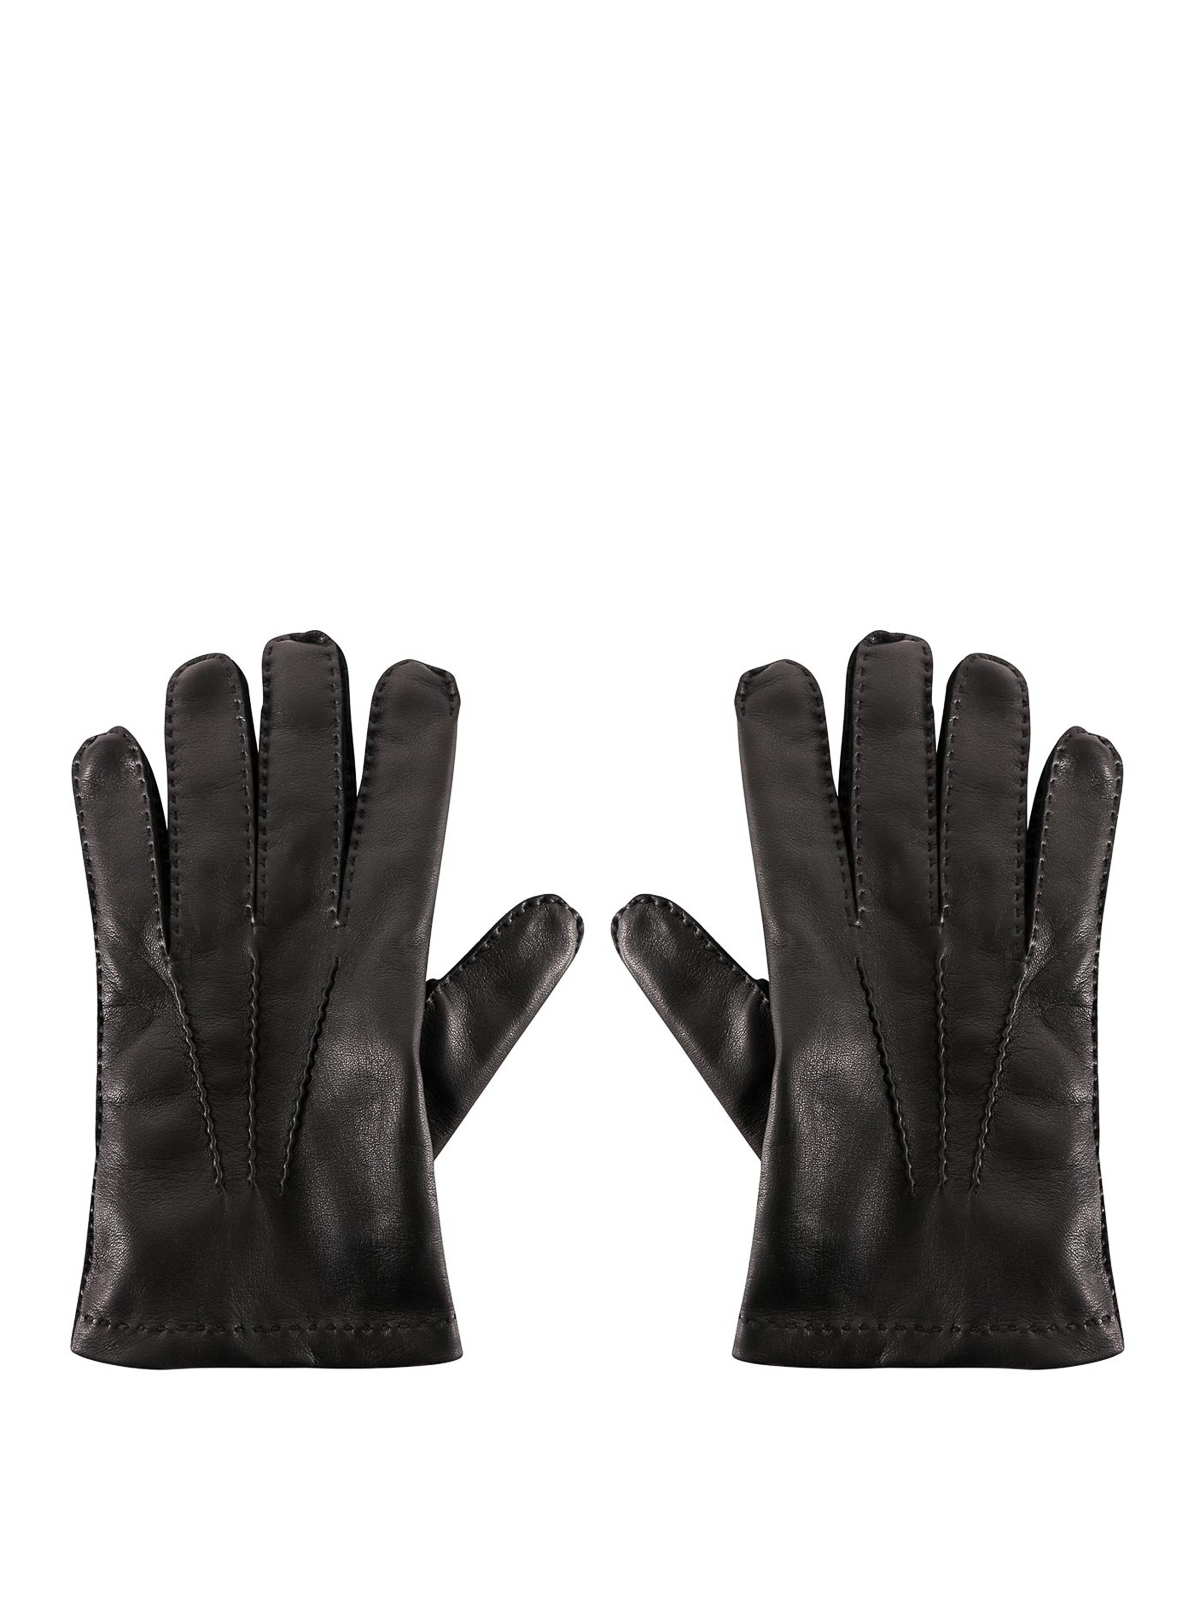 Gloves Tom Ford - Napa gloves - TG0760X38BLACK | Shop online at iKRIX